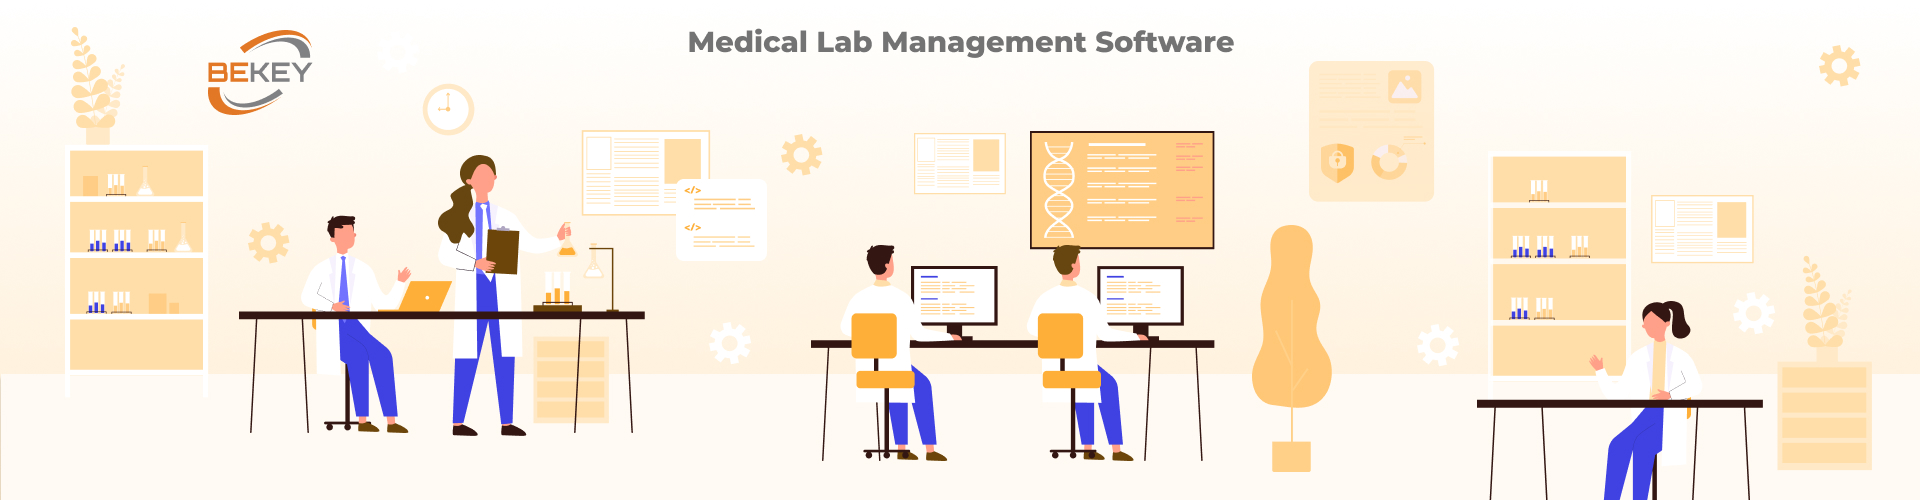 Medical Lab Management Software - image